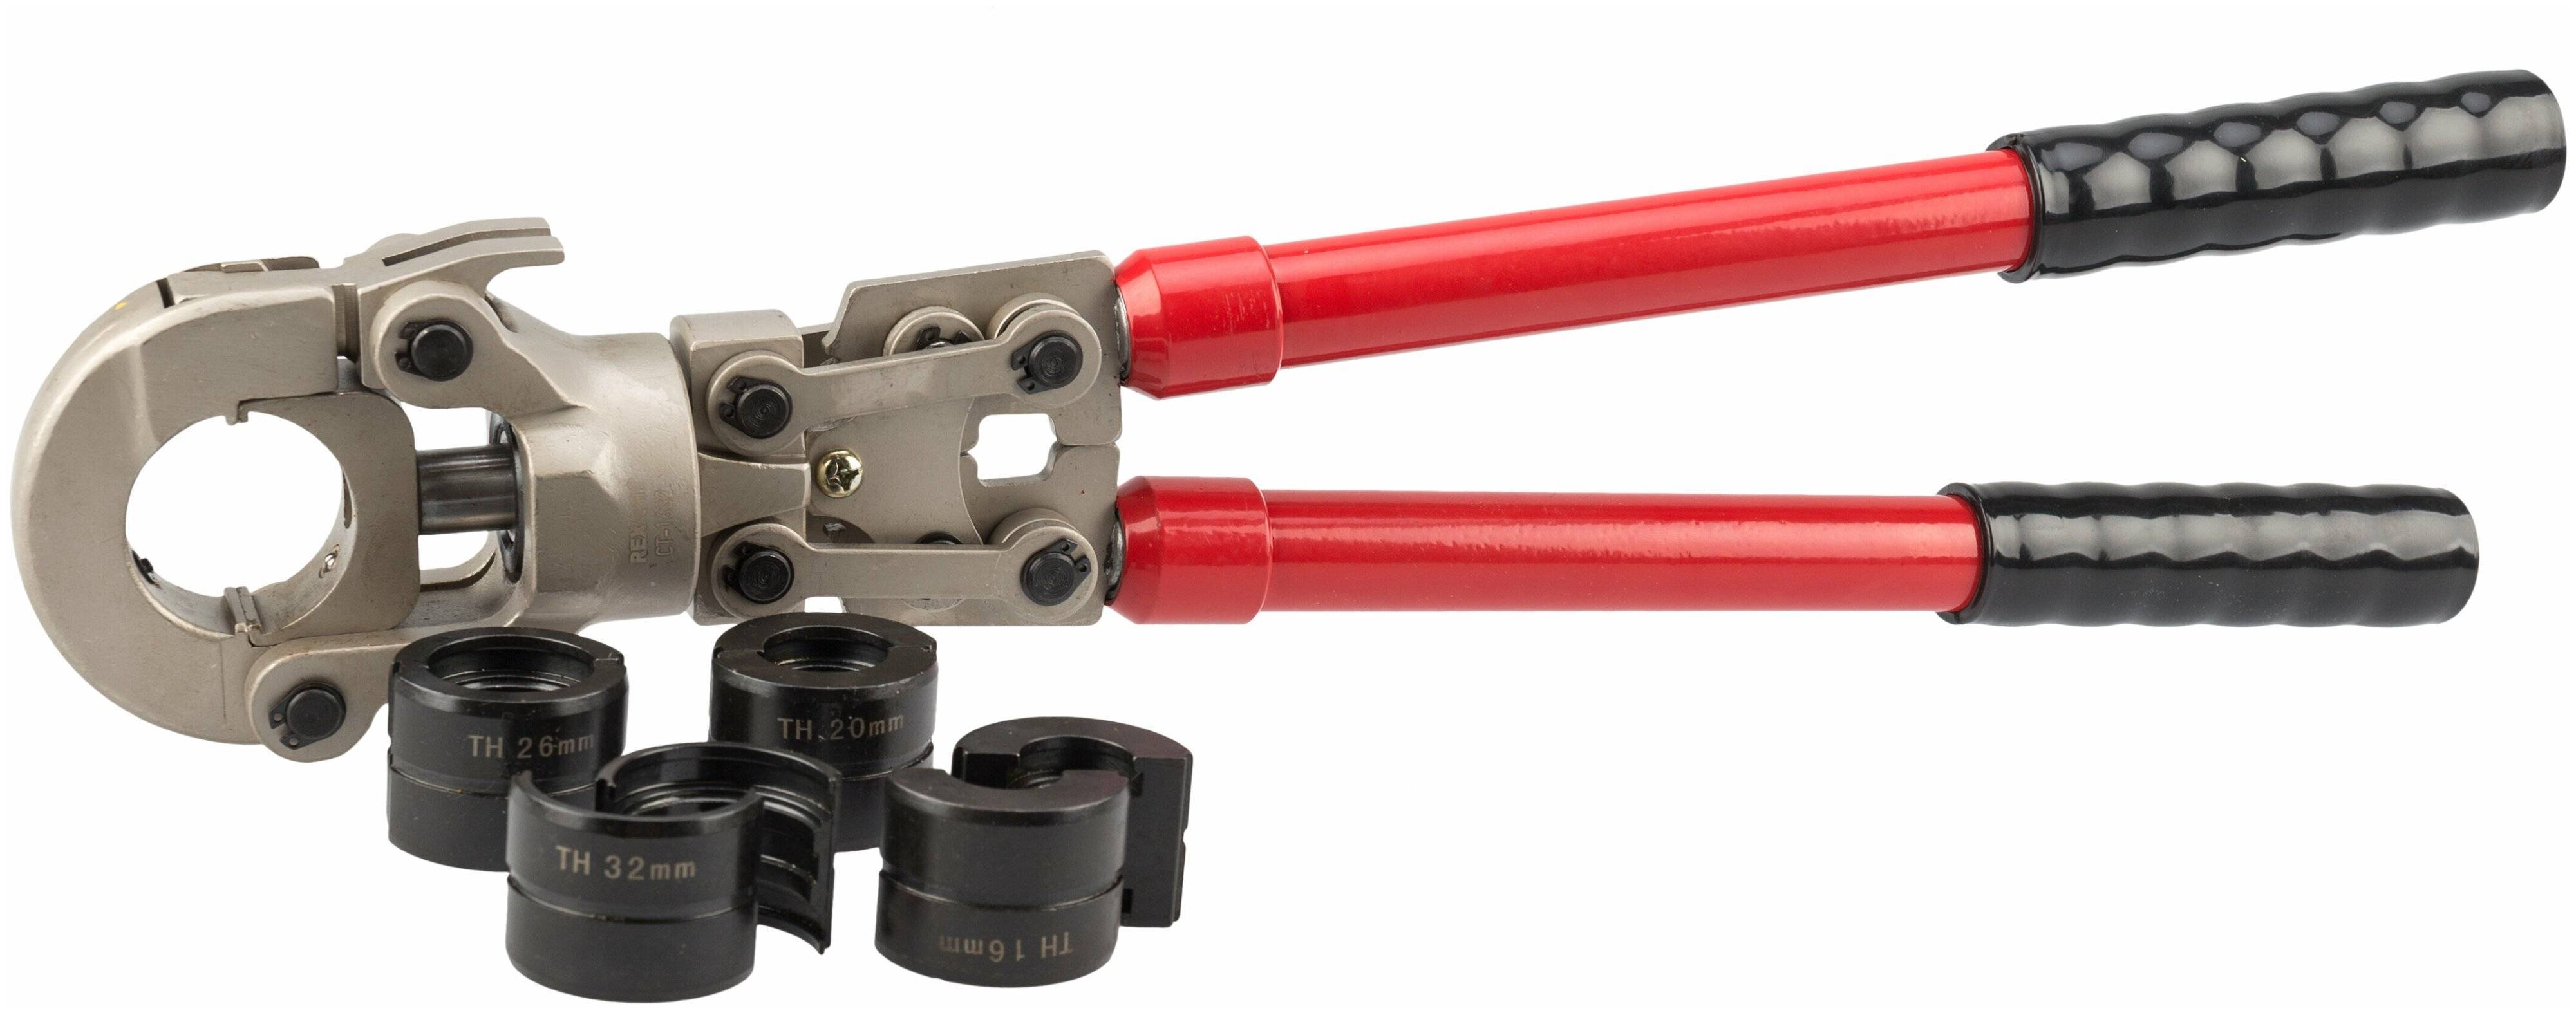 Пресс-клещи для металлопластиковых труб: как выбрать и как использовать